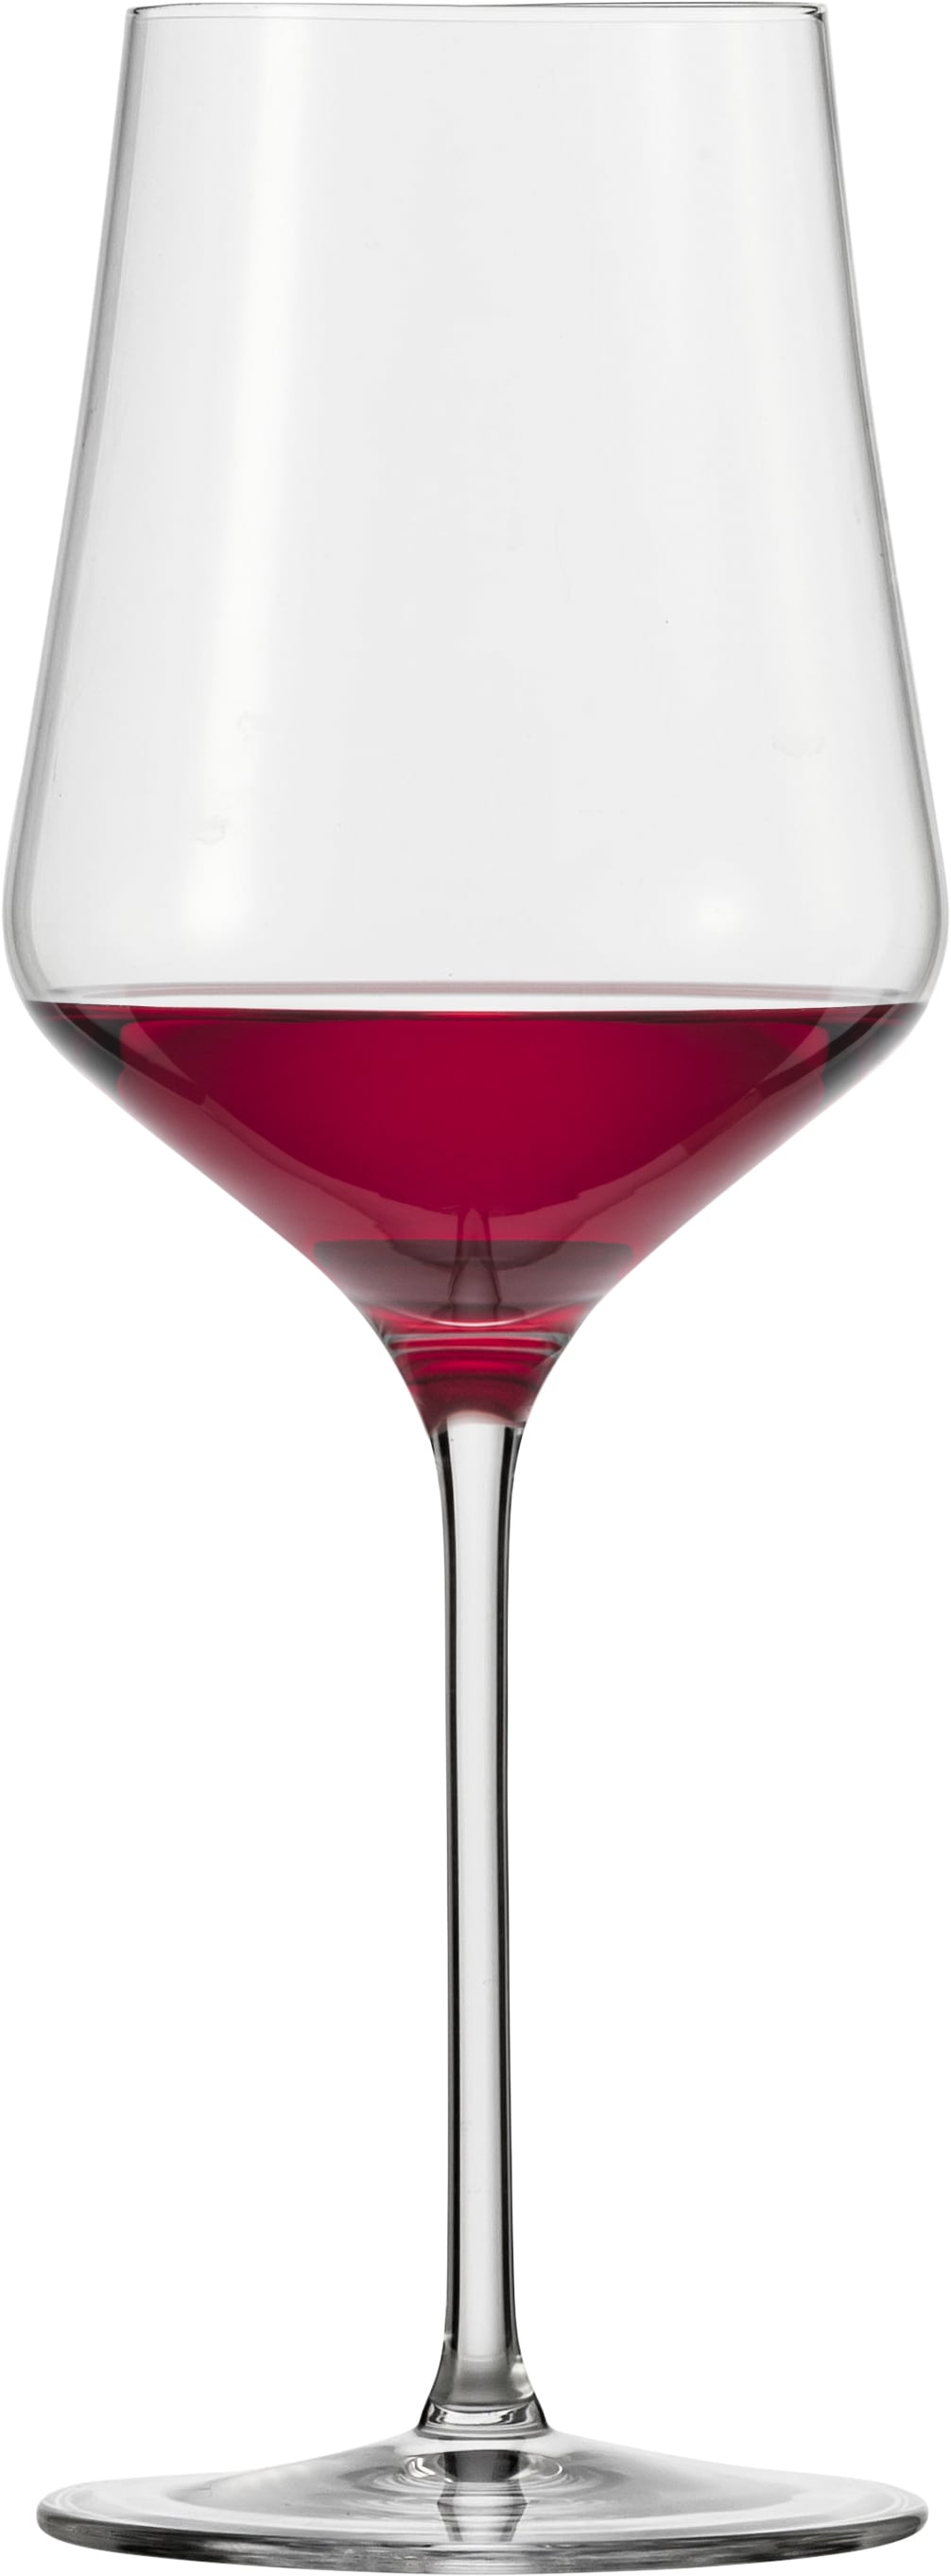 Rotweinglas »Sky SensisPlus«, (Set, 4 tlg.), bleifrei, 490 ml, 4-teilig